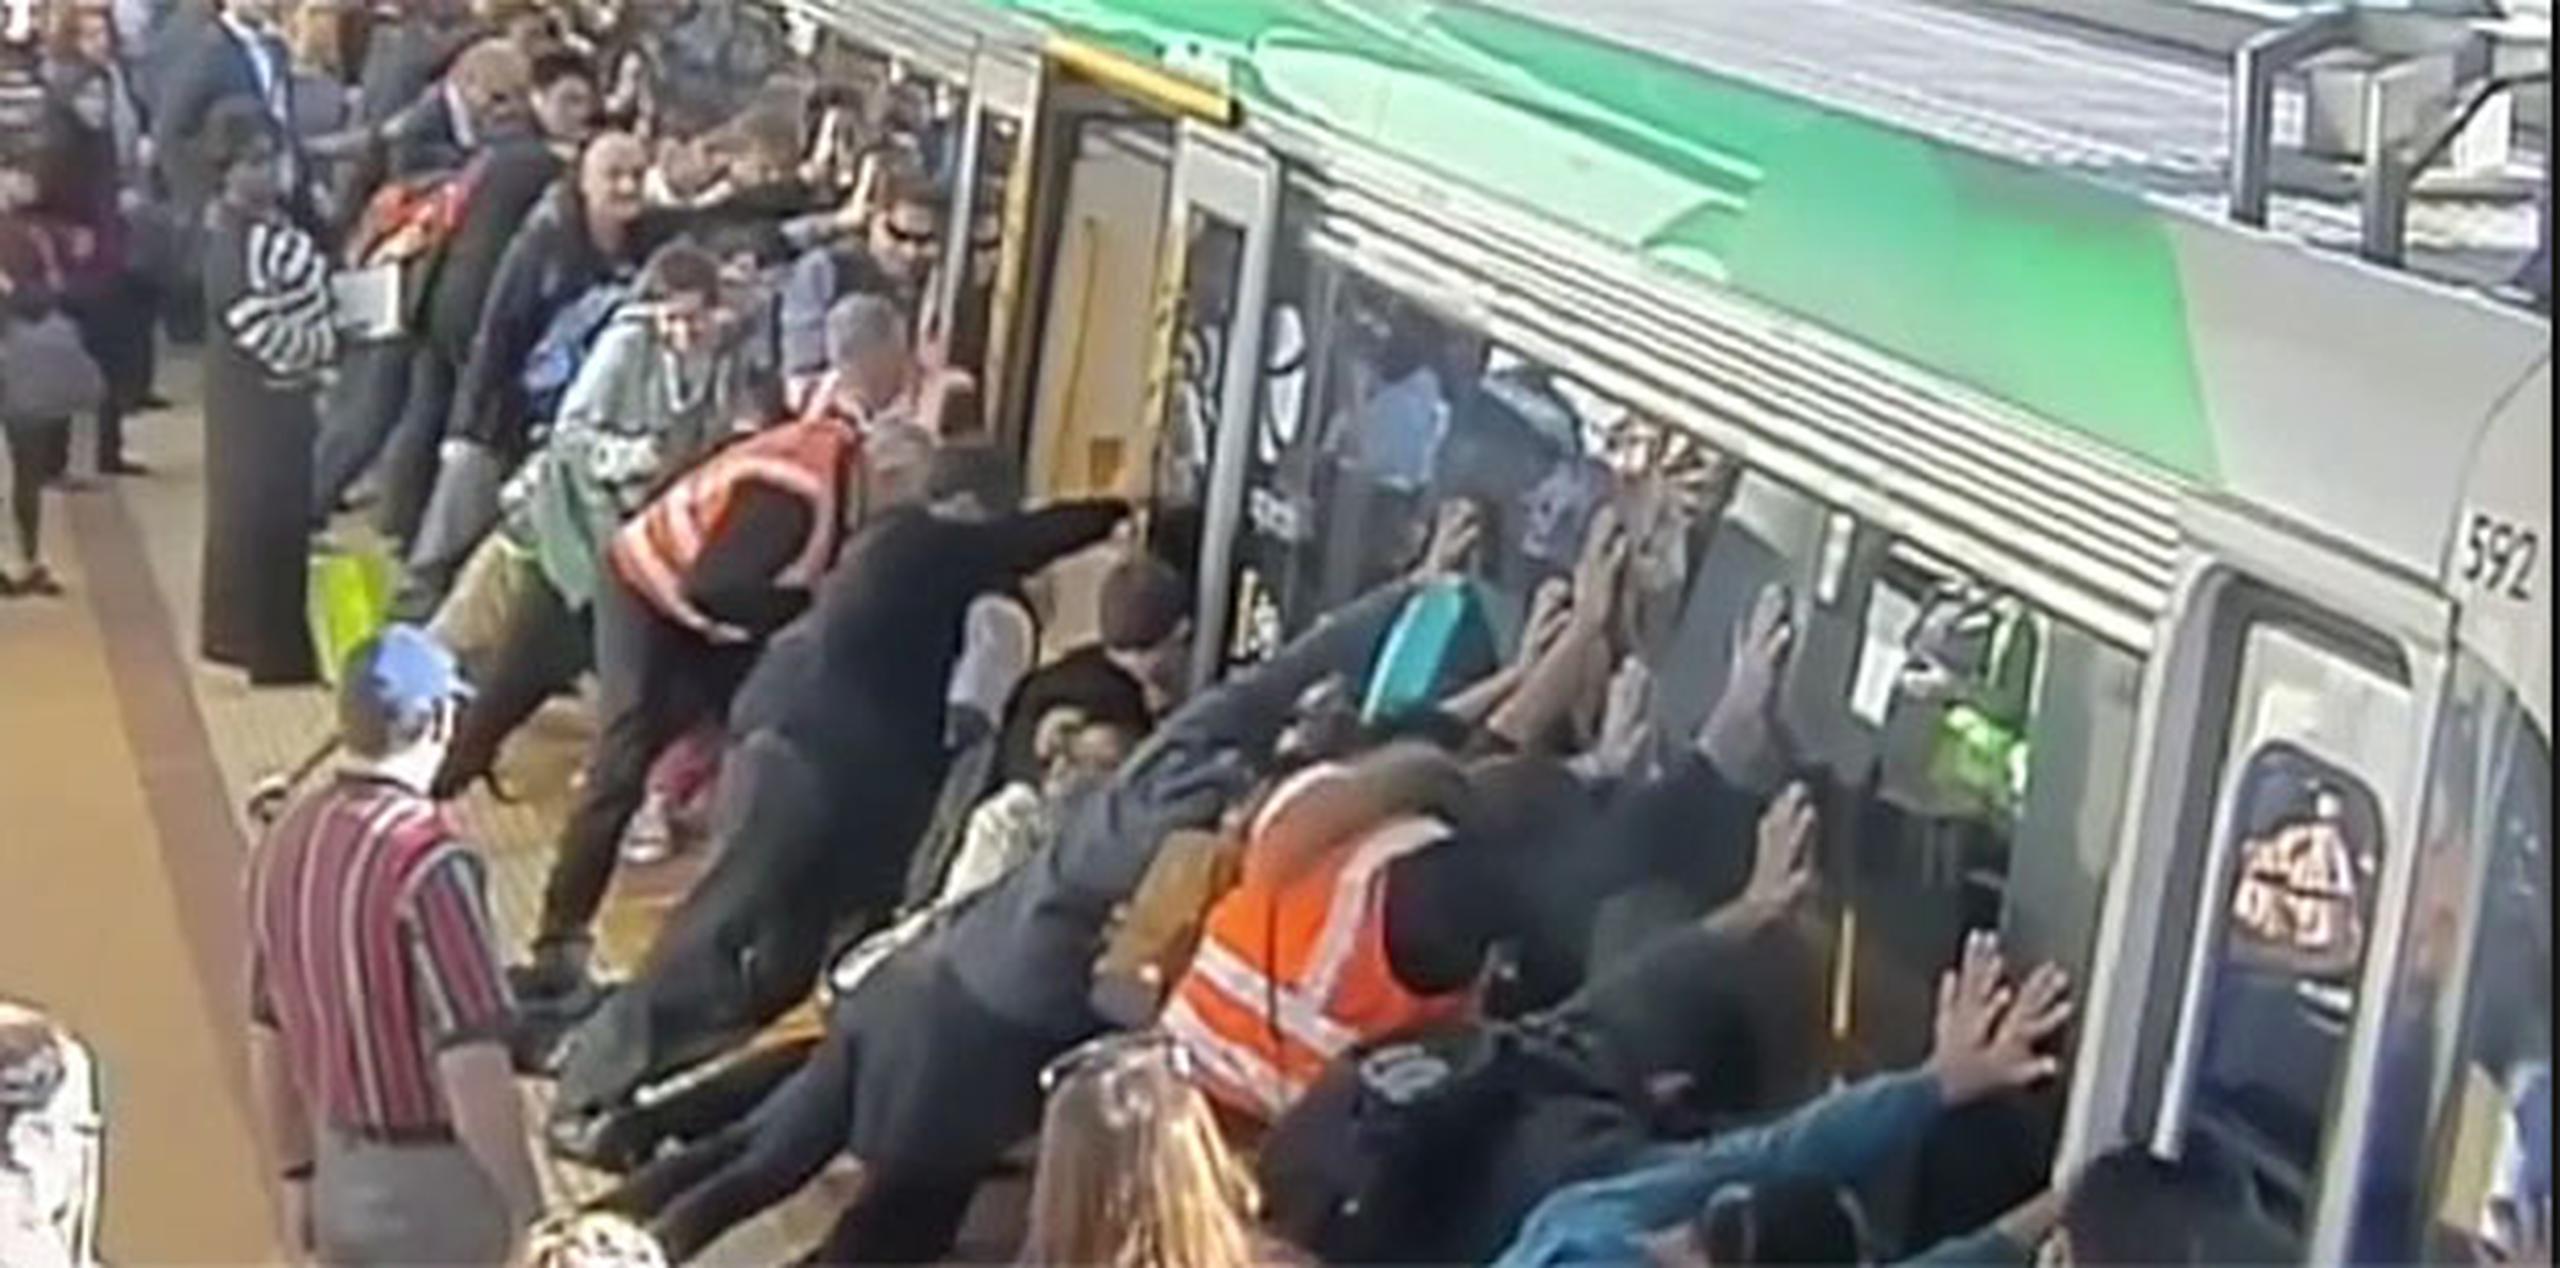 Las imágenes muestran a decenas de personas que acuden a empujar el vagón para ladearlo y liberar al hombre, que había caído hasta la altura del muslo en el hueco. (YT)